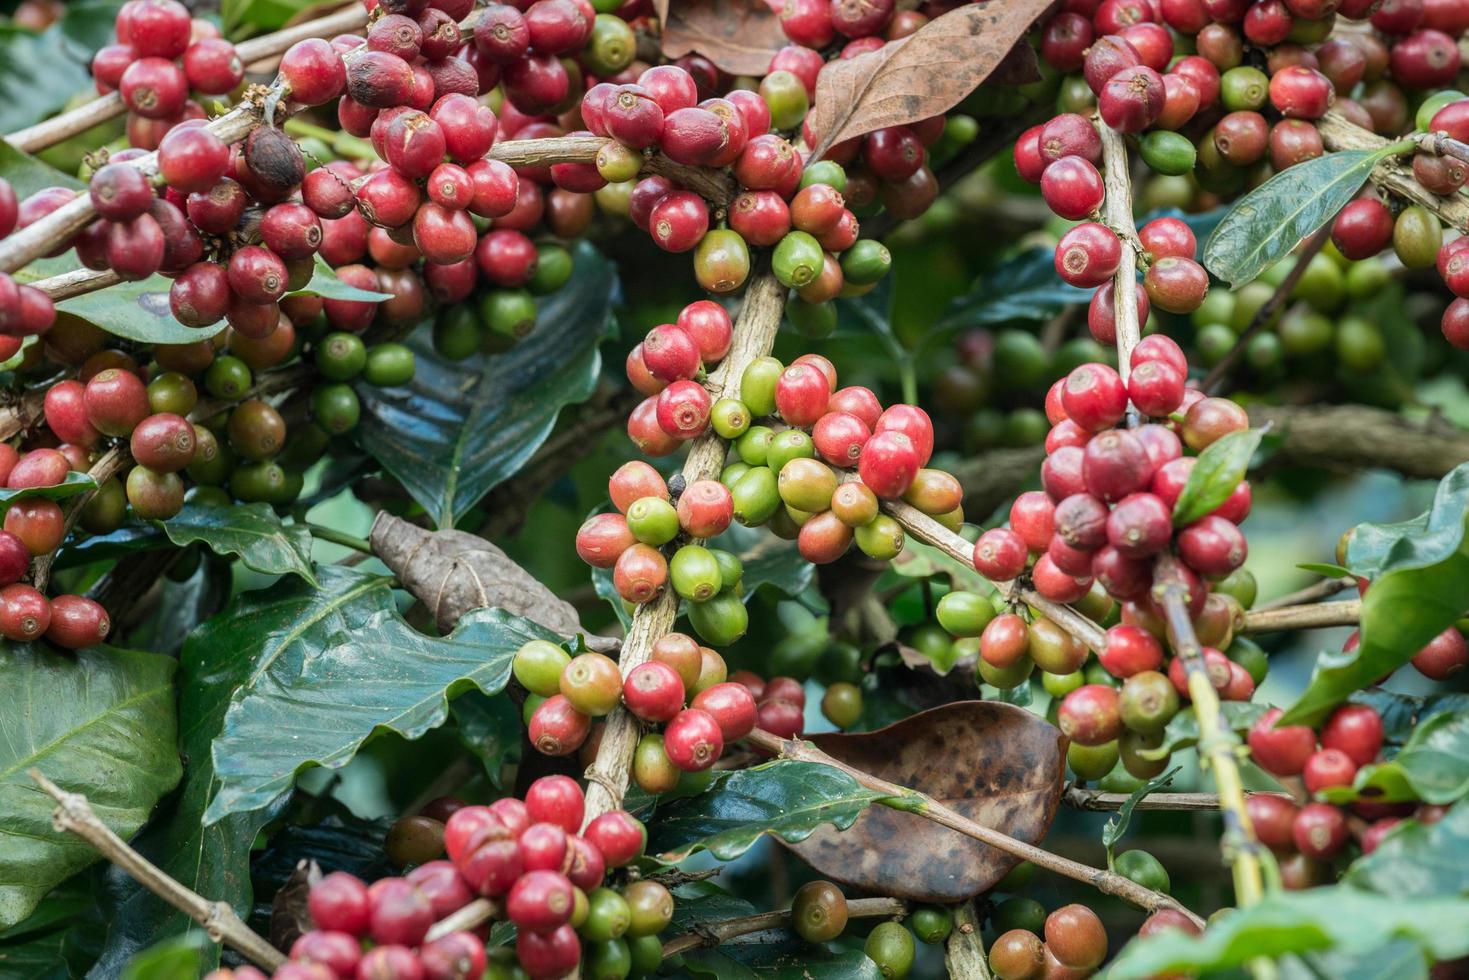 coffea tree é um gênero de plantas com flores cujas sementes, chamadas grãos de café, são usadas para fazer várias bebidas e produtos de café. foto